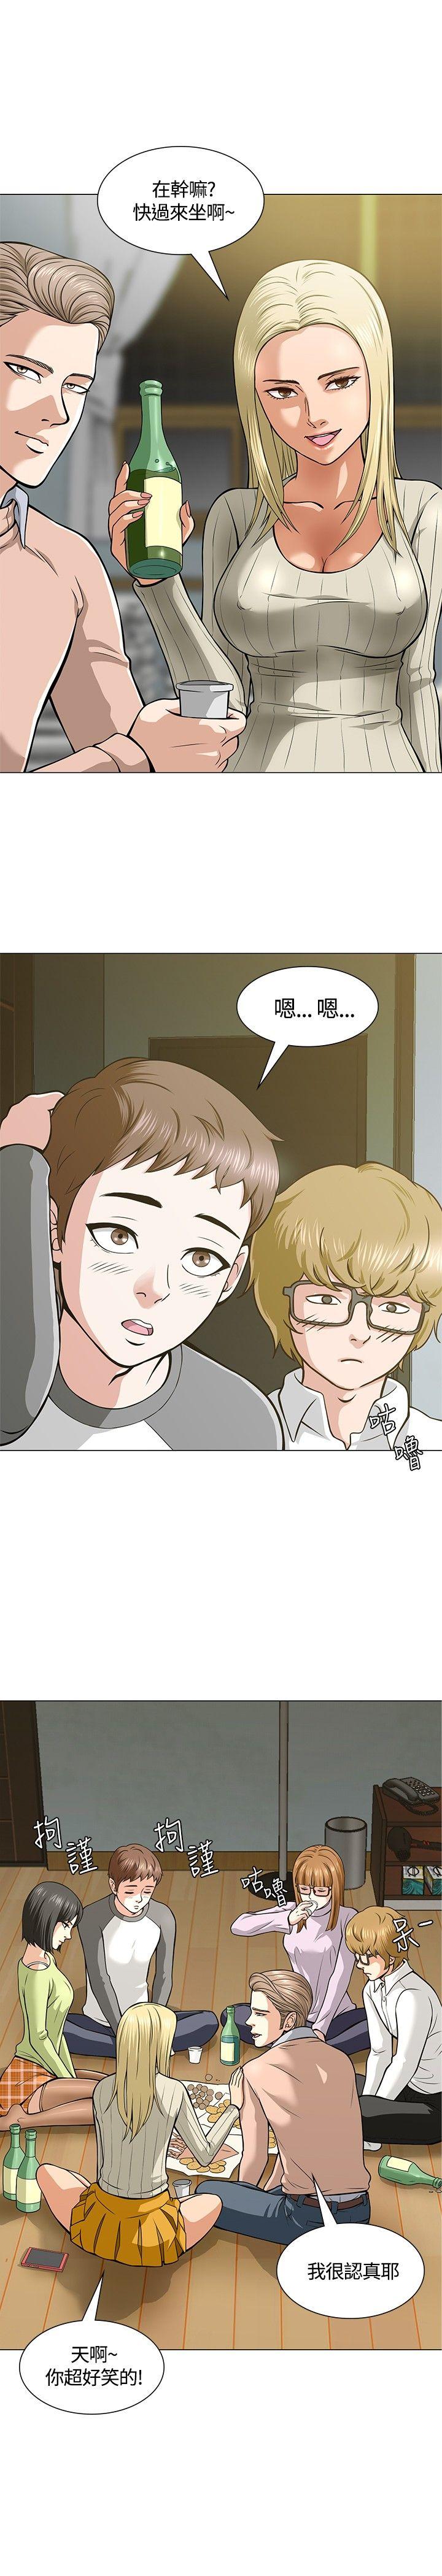 韩国污漫画 Roommate 第4话 21